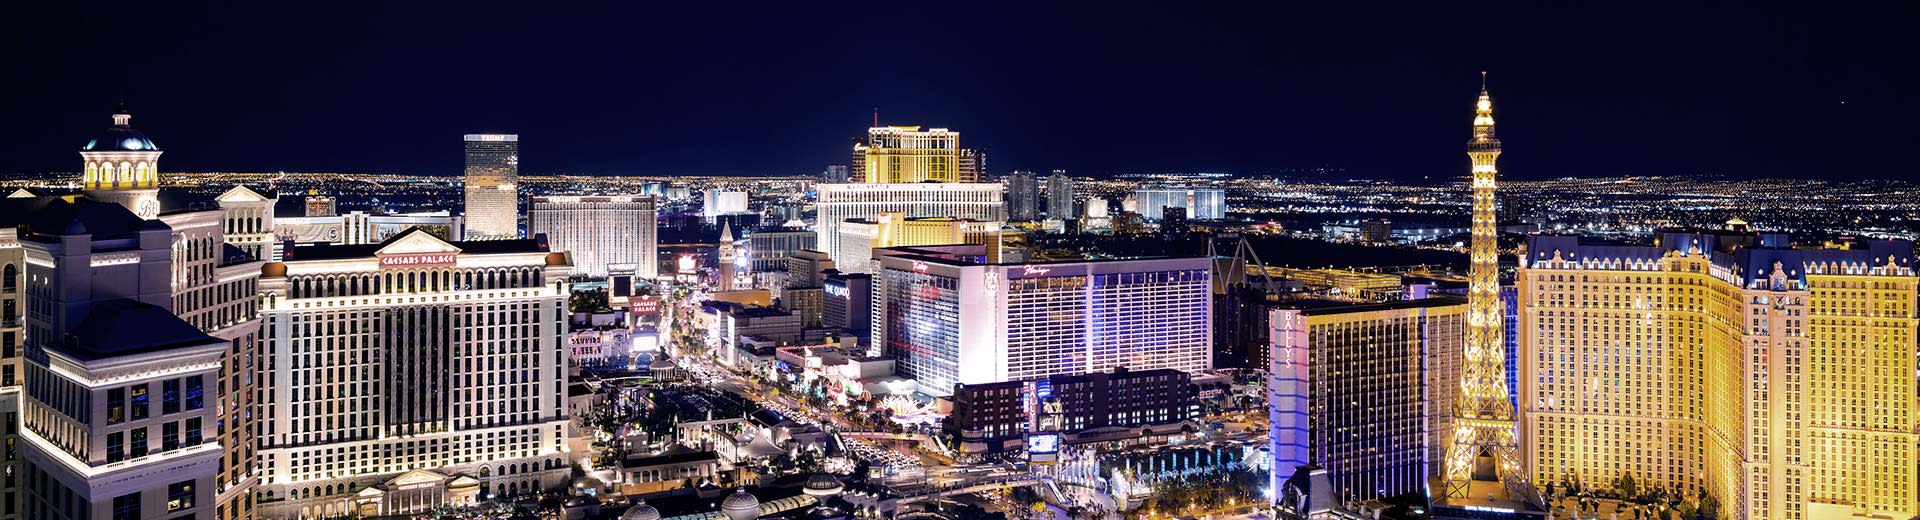 Le célèbre Strip de Las Vegas s'est éclairé la nuit, avec des casinos et des rues de remorquage remplis de voitures.